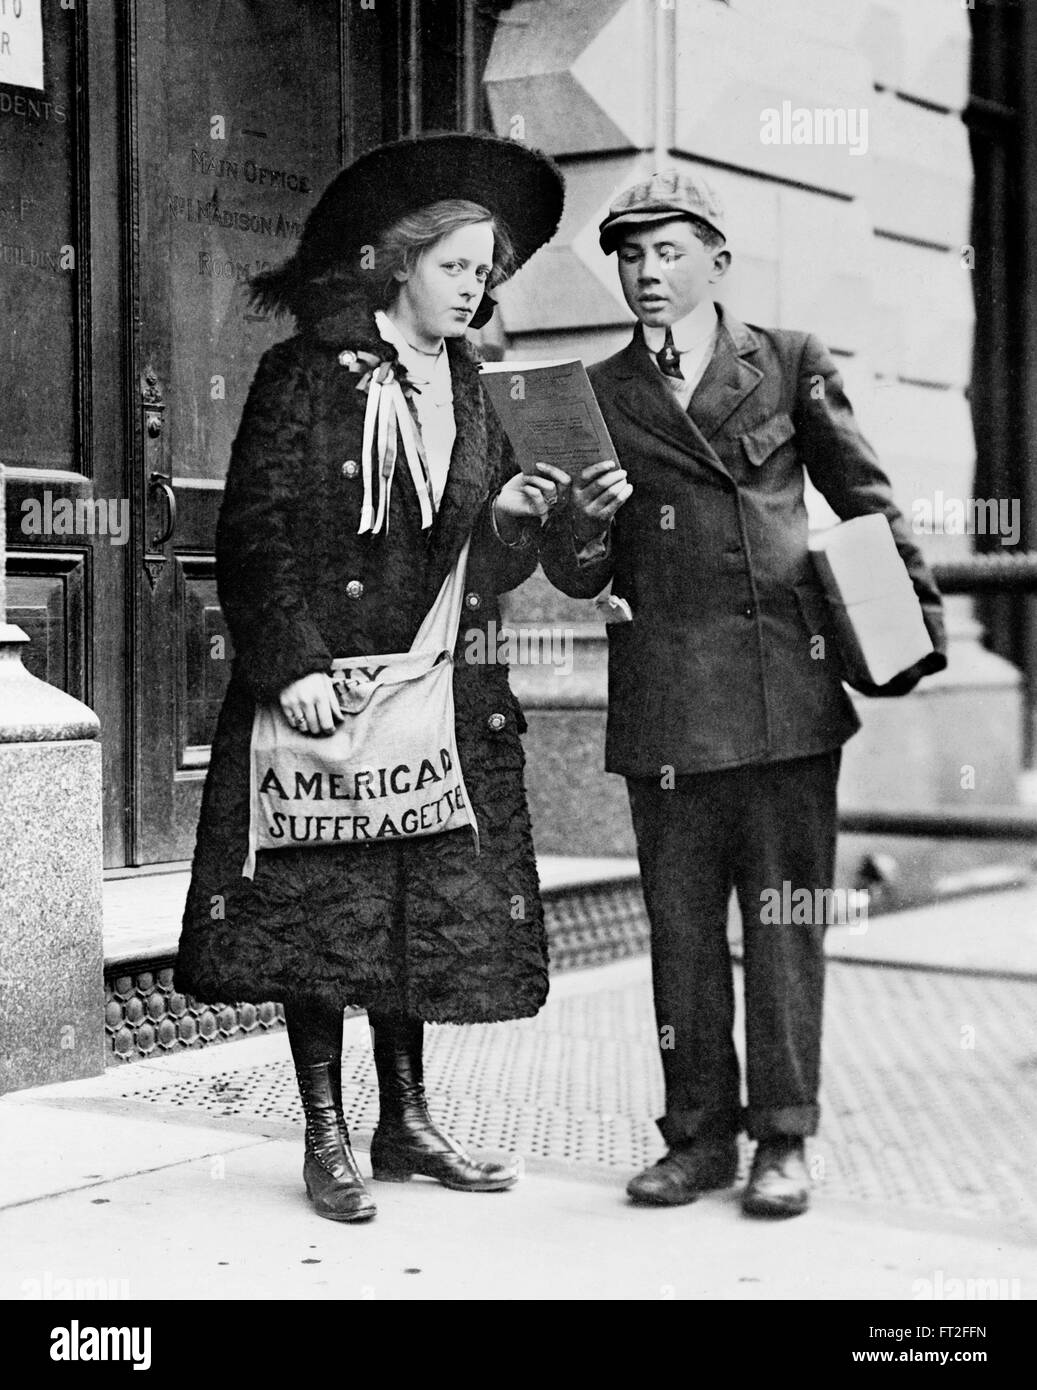 Un giovane di 19 anni suffragette americane, Fay Hubbard, suffragette vendita quotidiani sulle strade di New York, febbraio 1910. Foto Stock